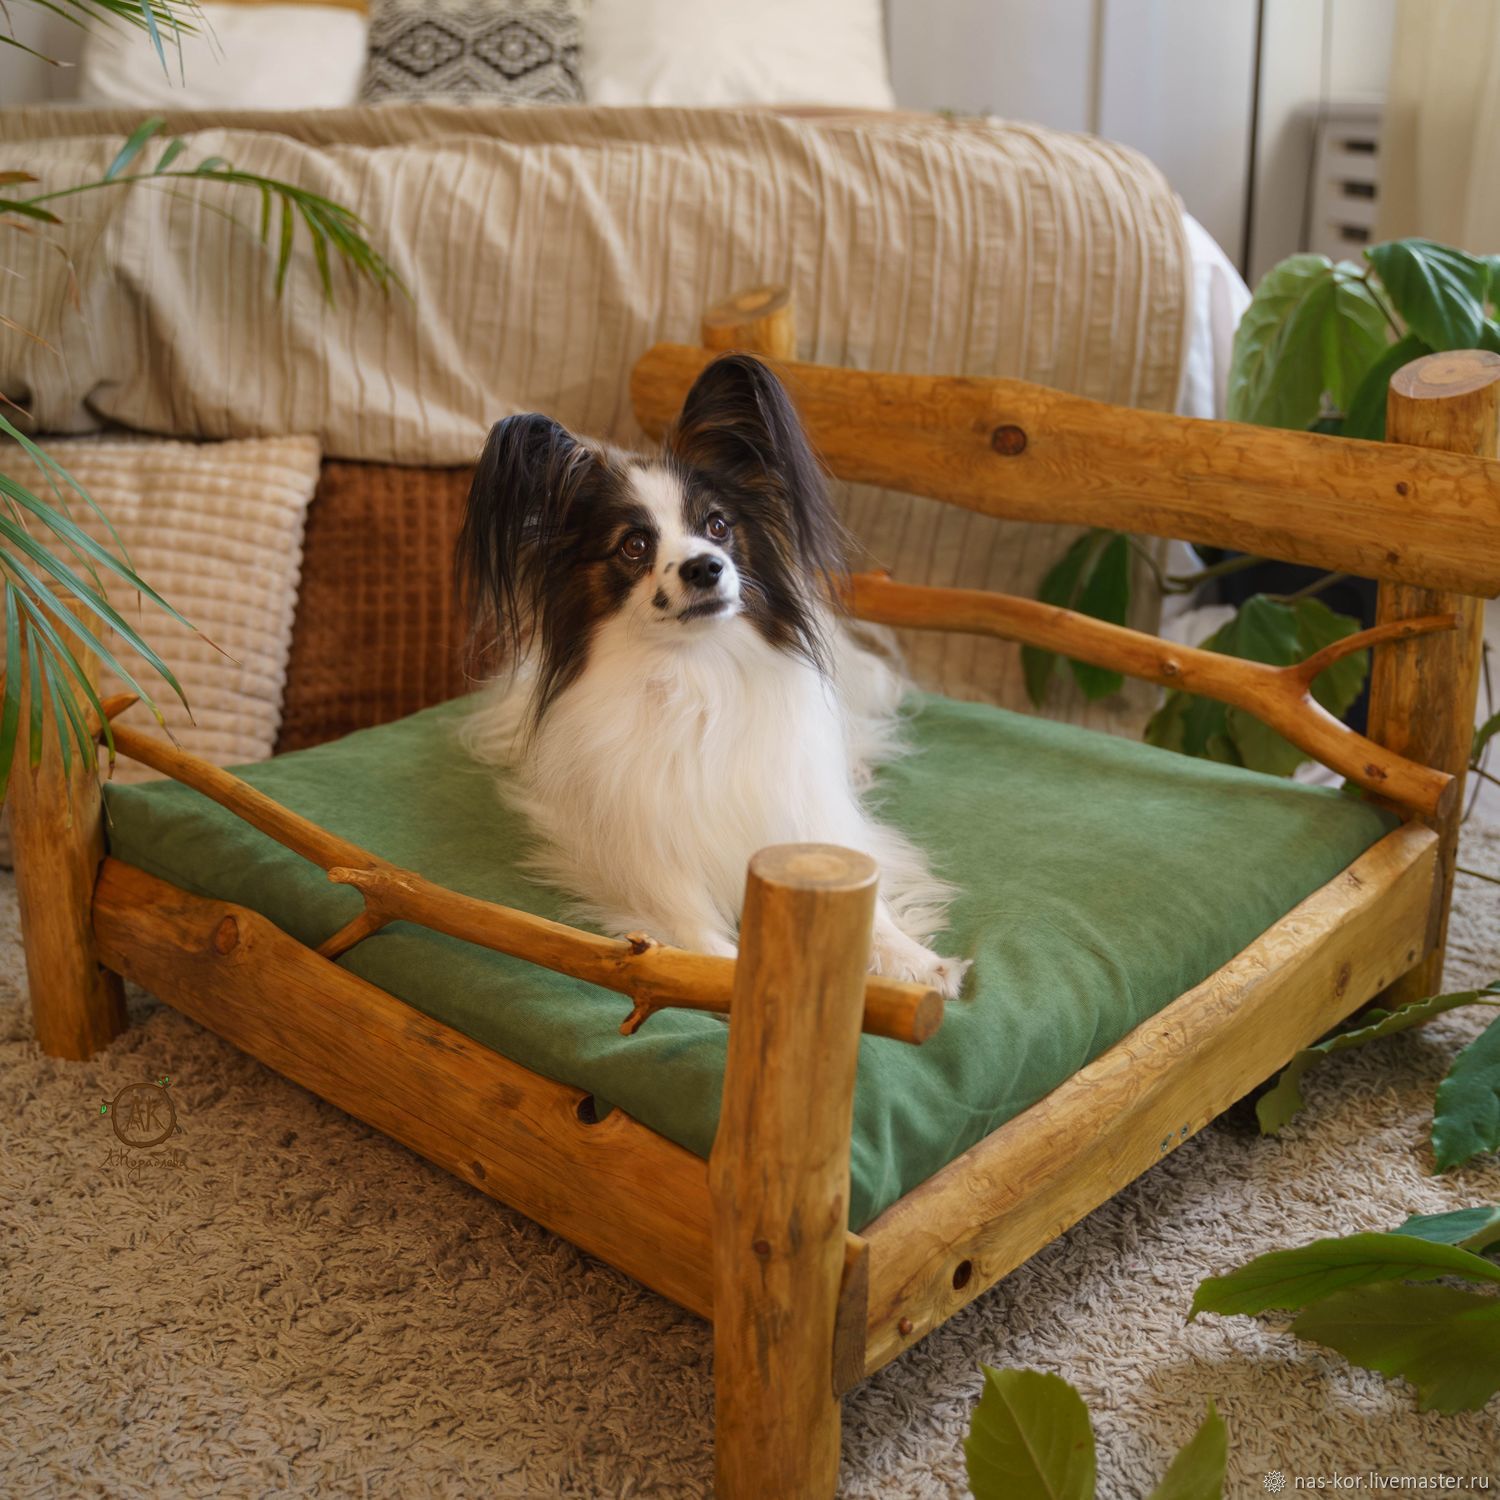 Лежанку для собаки купить в Минске в интернет магазине недорого